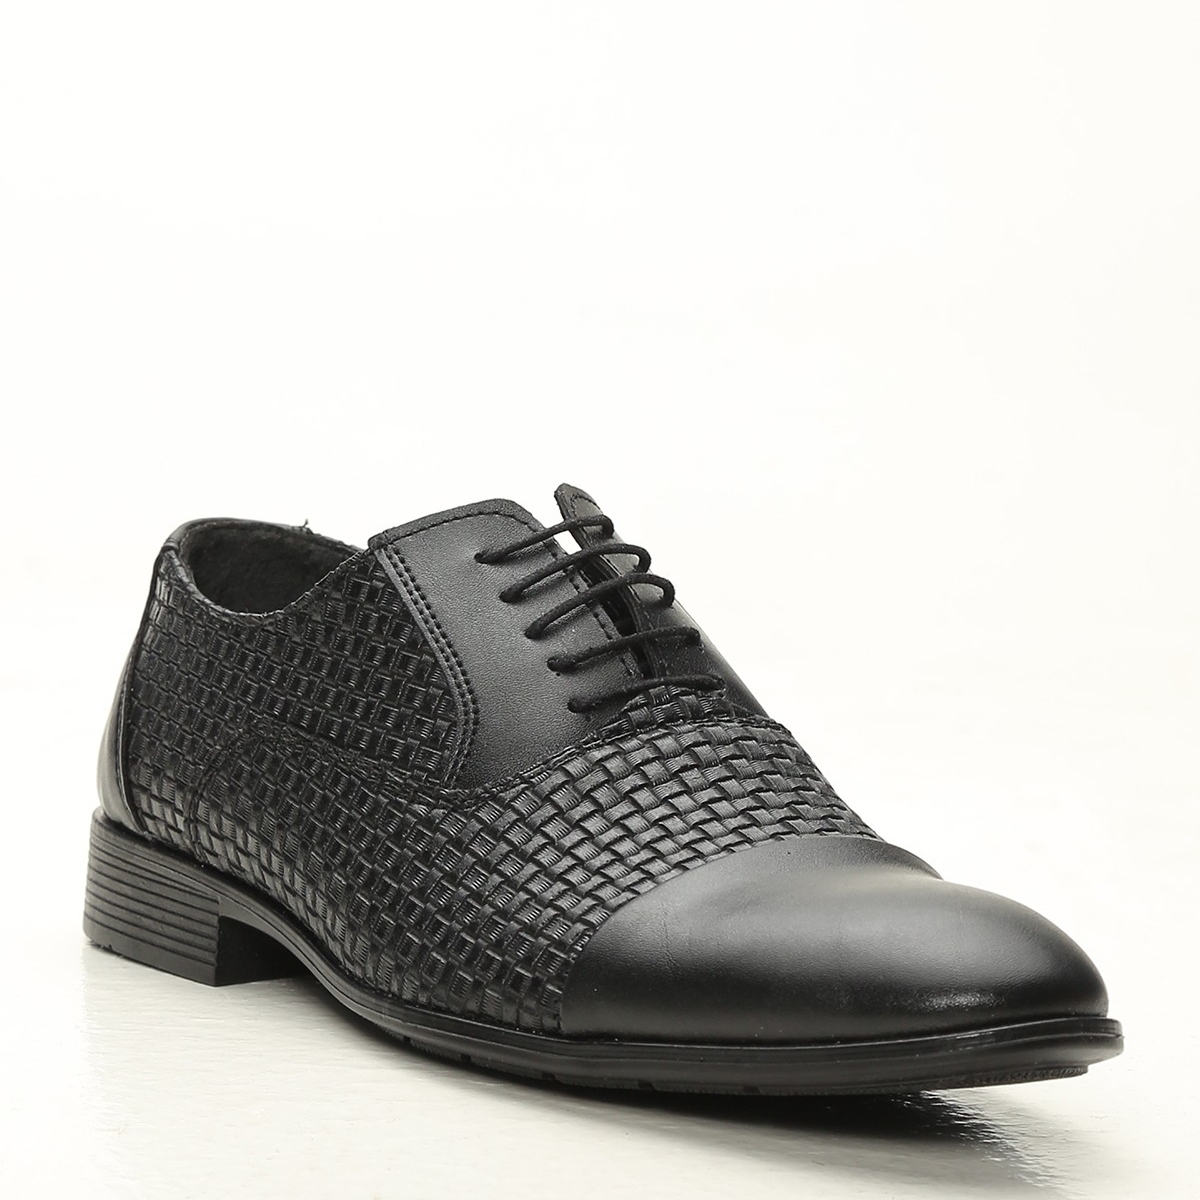 Flo Siyah Erkek Klasik Ayakkabı 1009-20-112006. 2